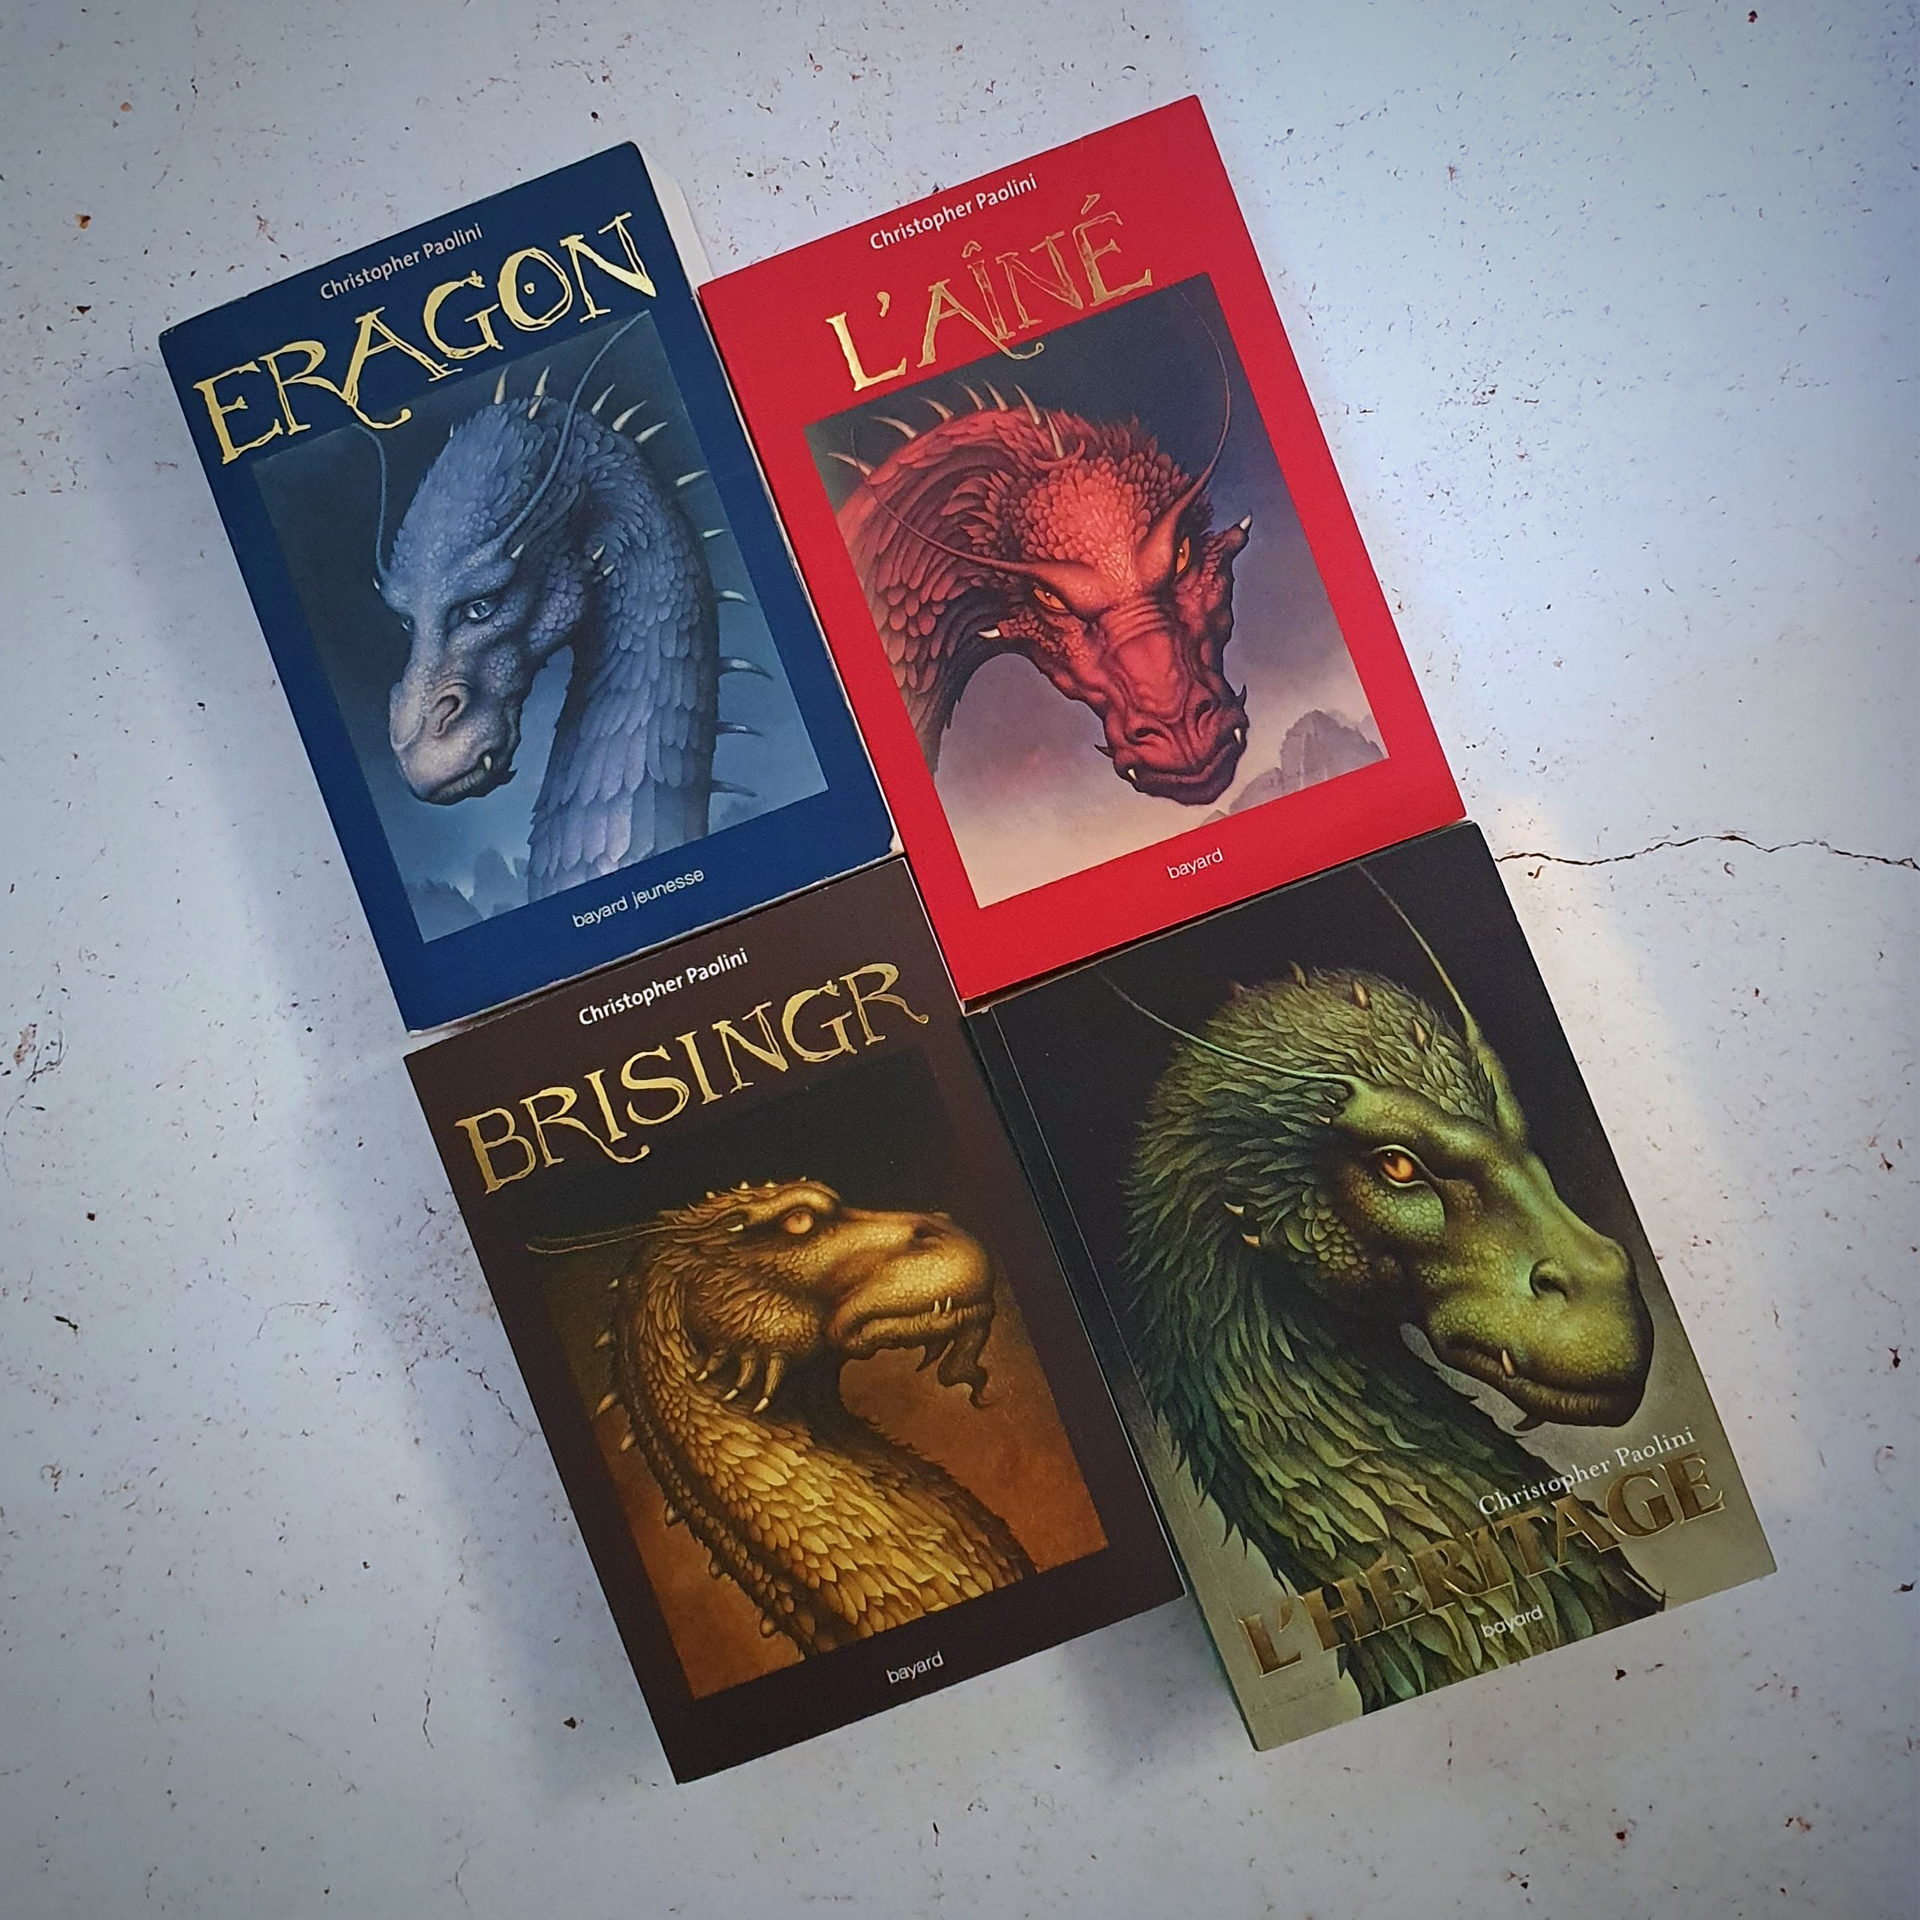 Eragon (saga) - Christopher Paolini